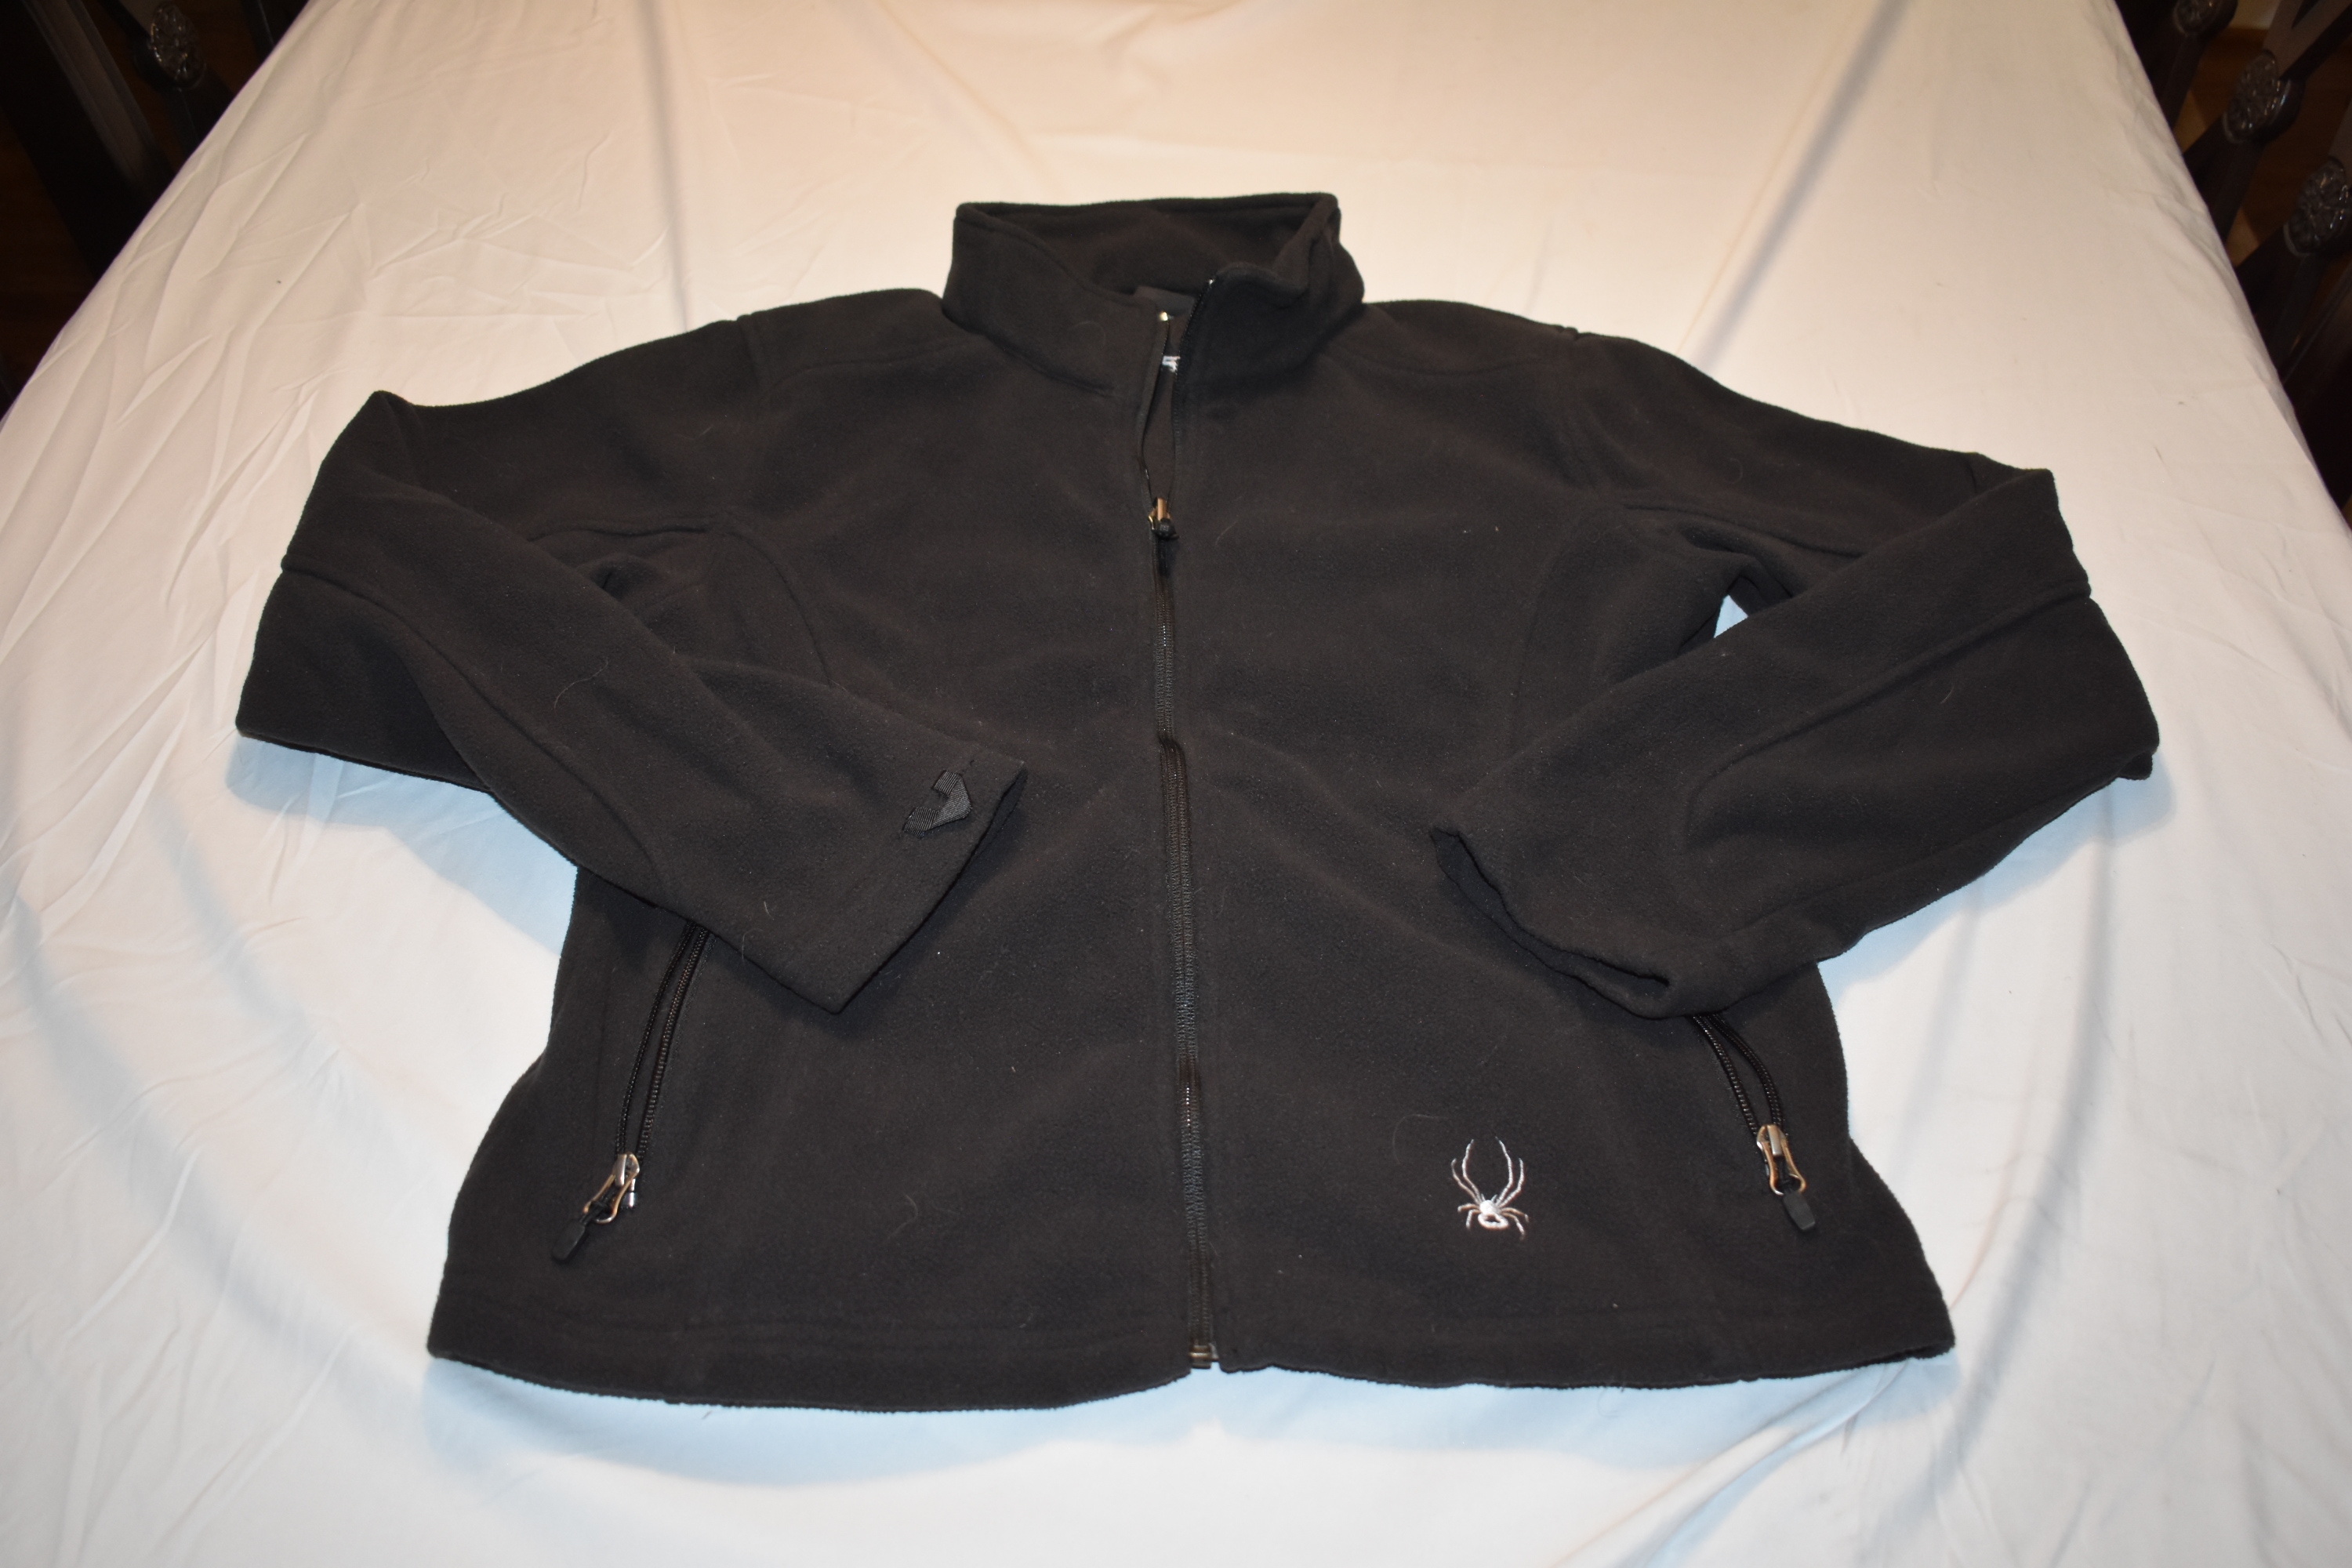 Spyder Full-Zip Winter Sports Jacket, Black, Women's Large